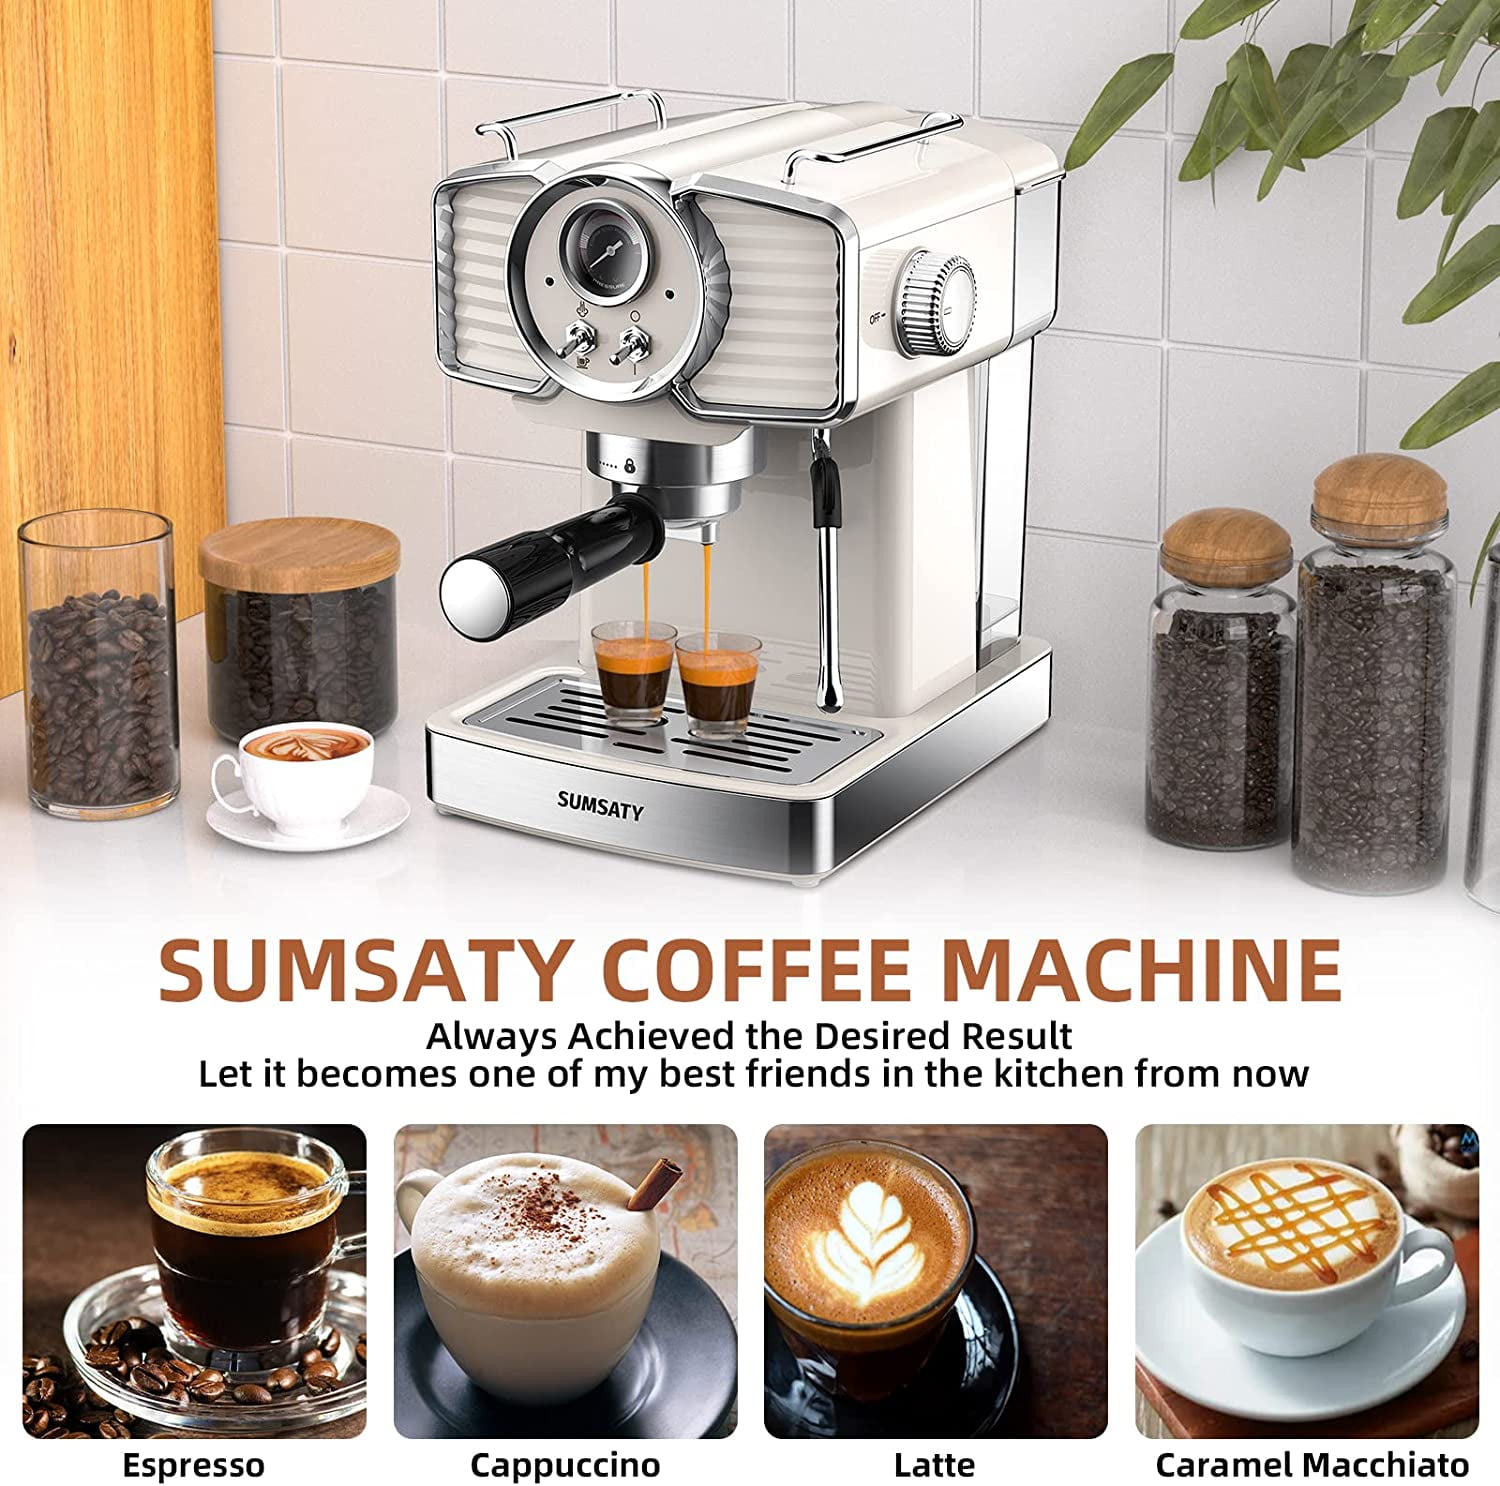 SUMSATY RNAB0BQ71GMQV sumsaty espresso coffee machine 20 bar, retro  espresso maker with milk frother steamer wand for cappuccino, latte,  macchiato